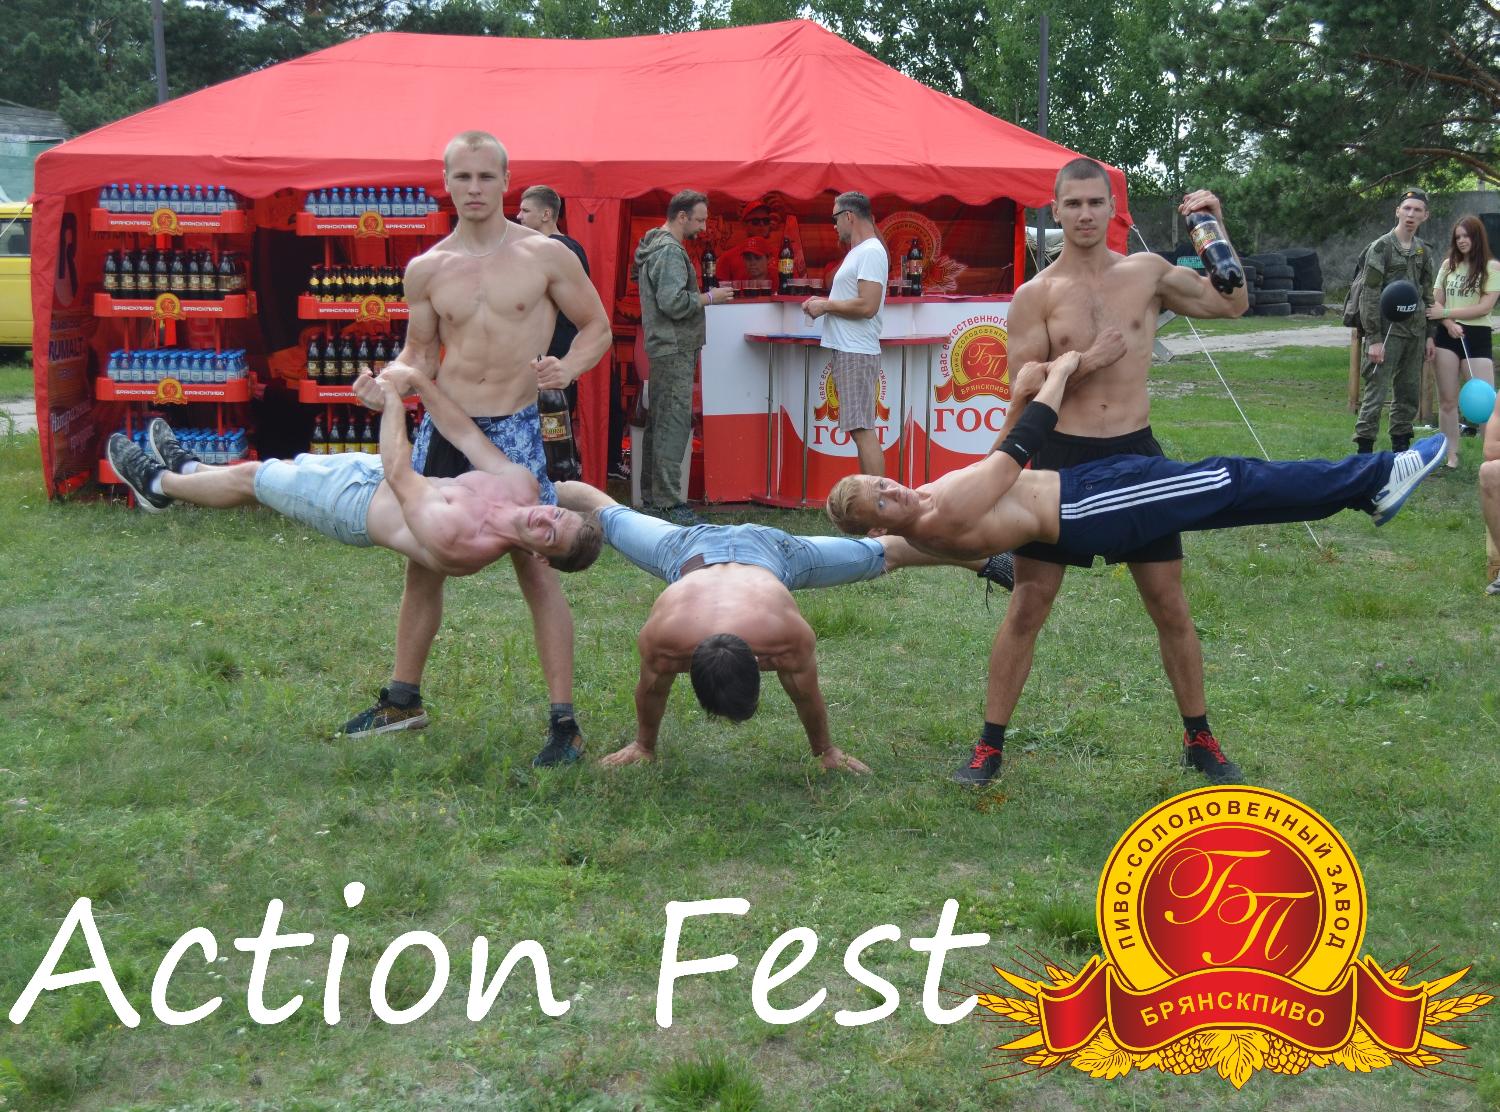 Action Fest